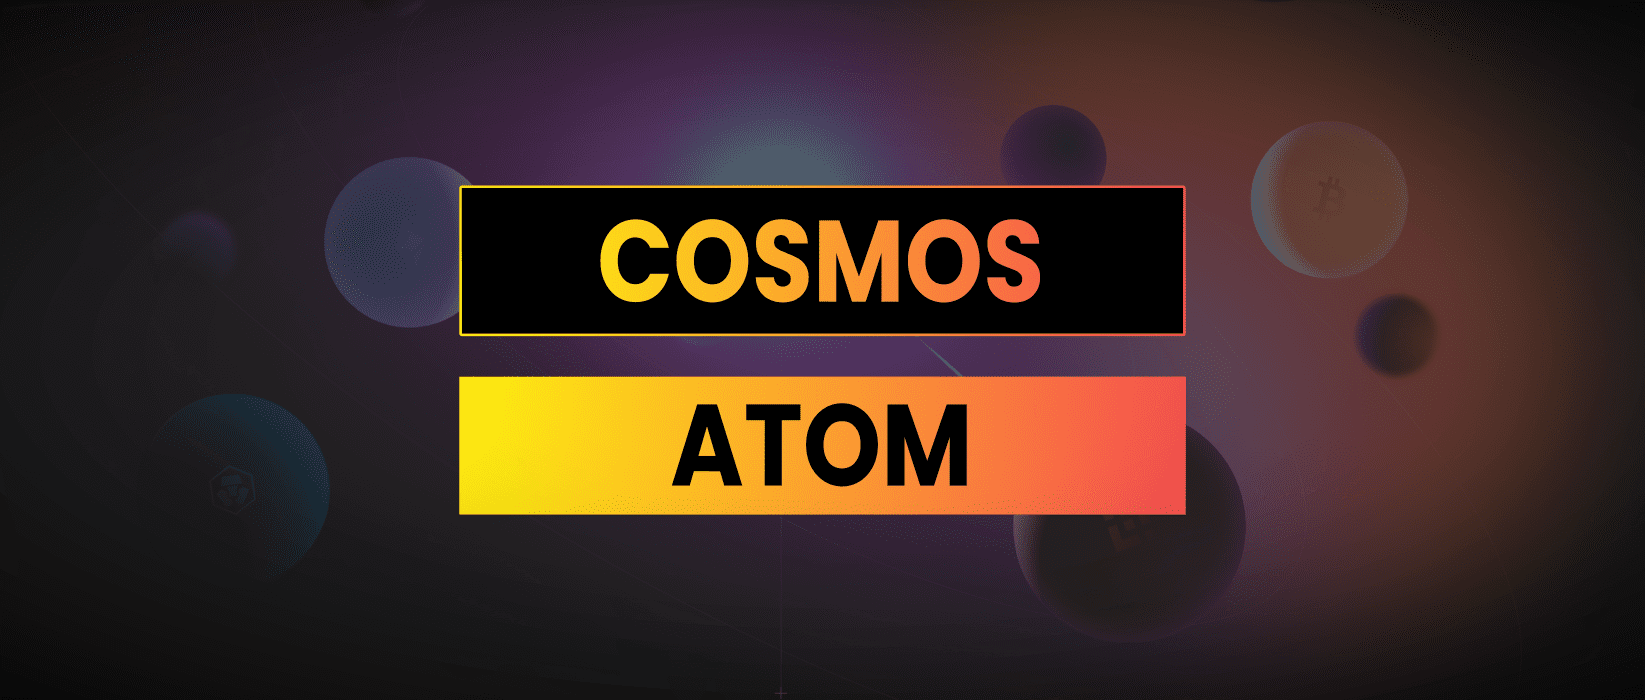 ATOM Cosmos Analysis | A Deep Dive Into The Cosmos Ecosystem